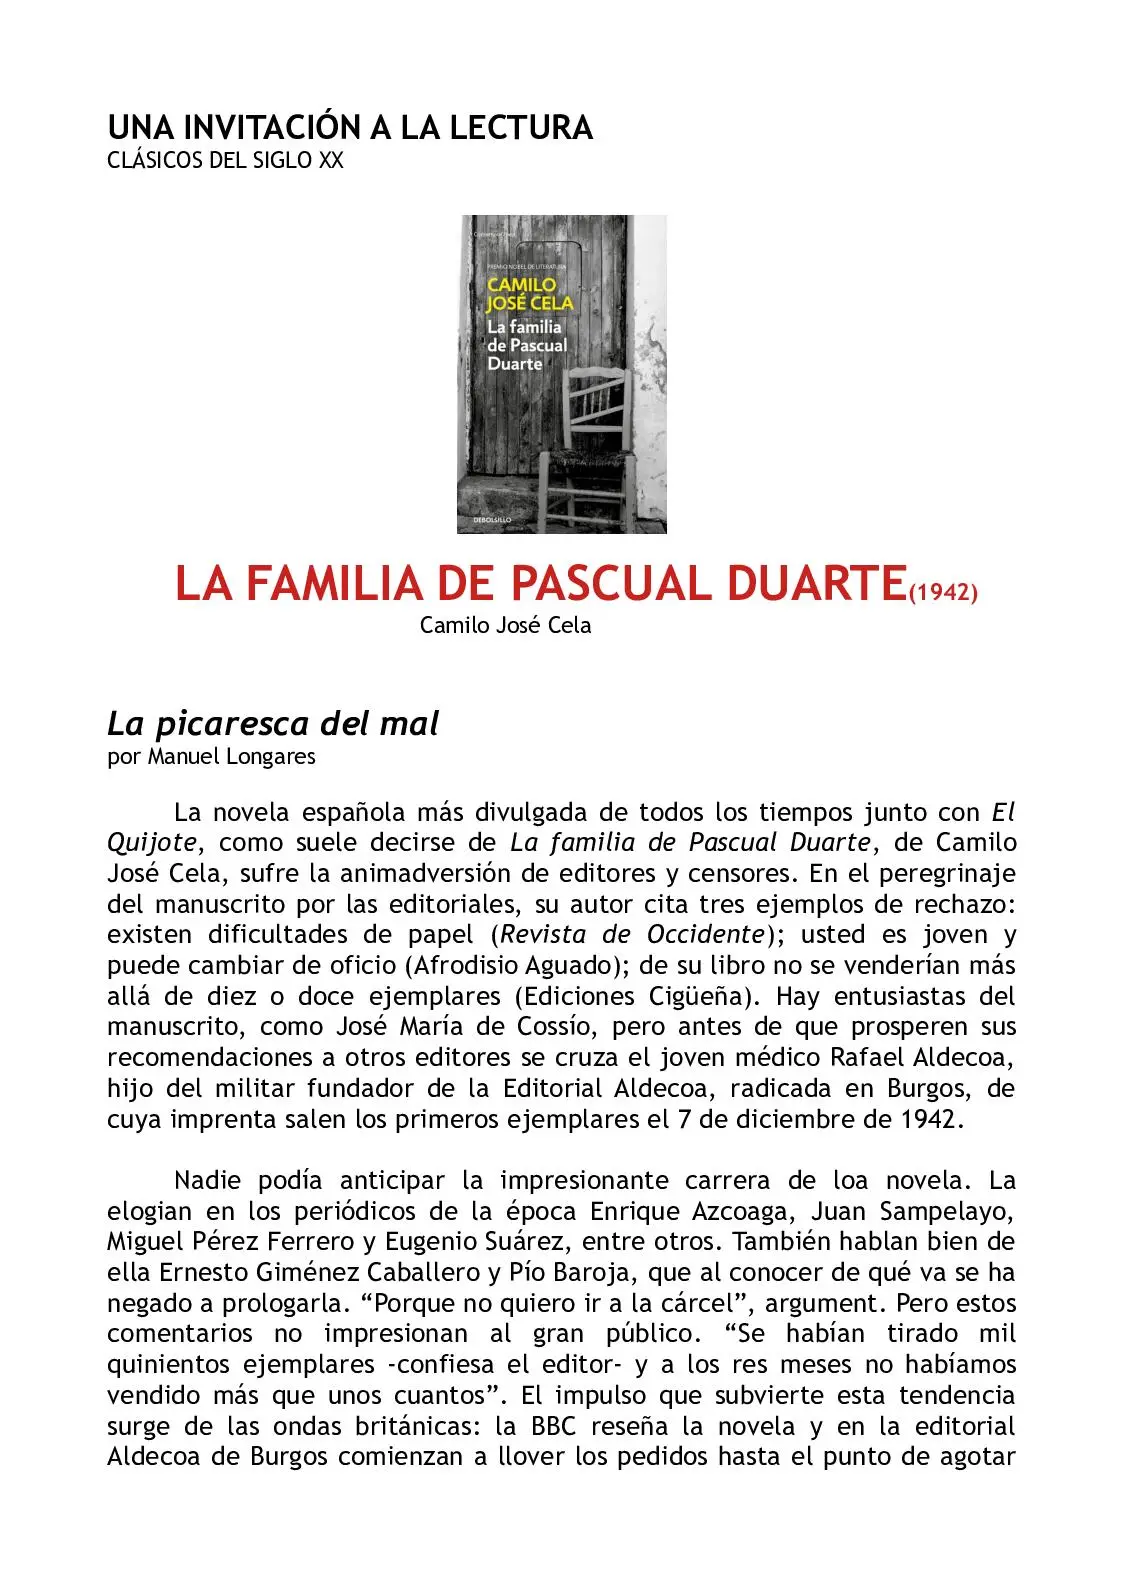 resumen del libro la familia de pascual duarte - Cómo comienza la historia de la familia de Pascual Duarte